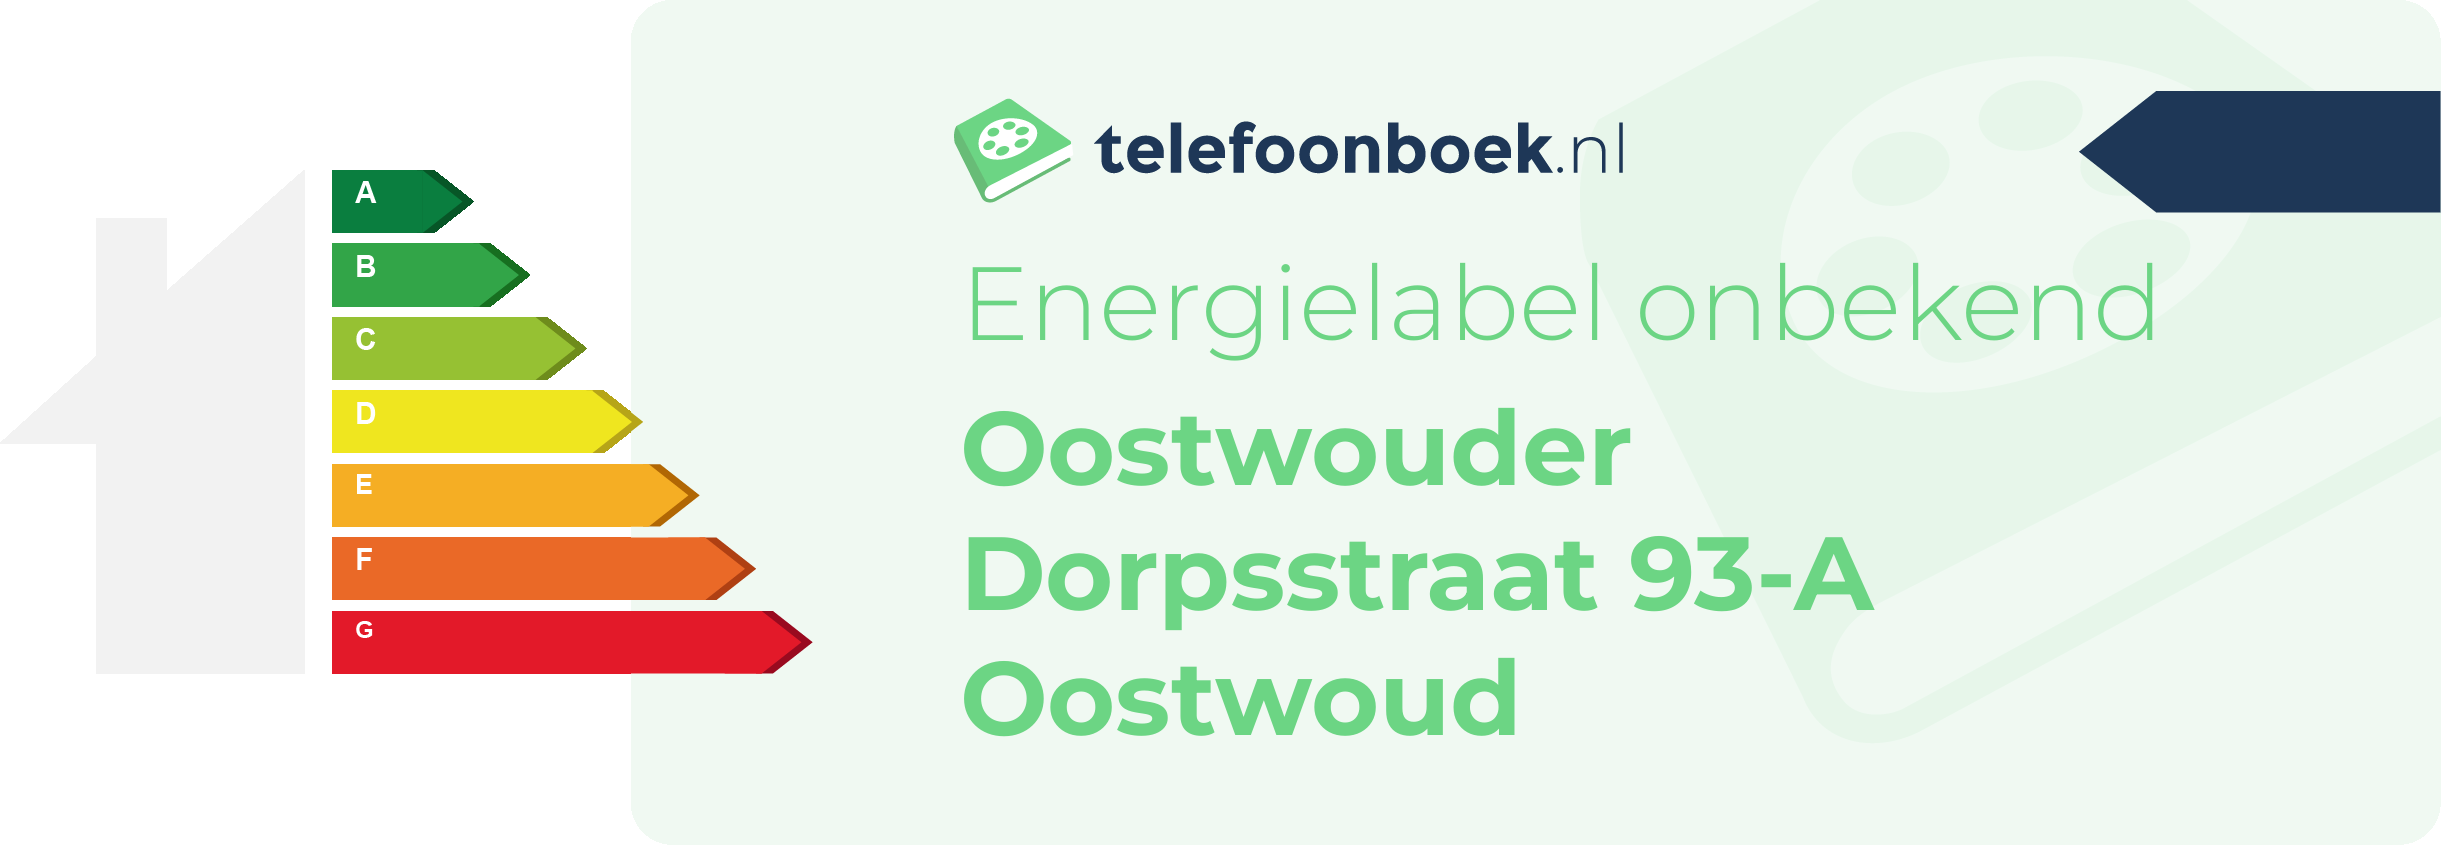 Energielabel Oostwouder Dorpsstraat 93-A Oostwoud